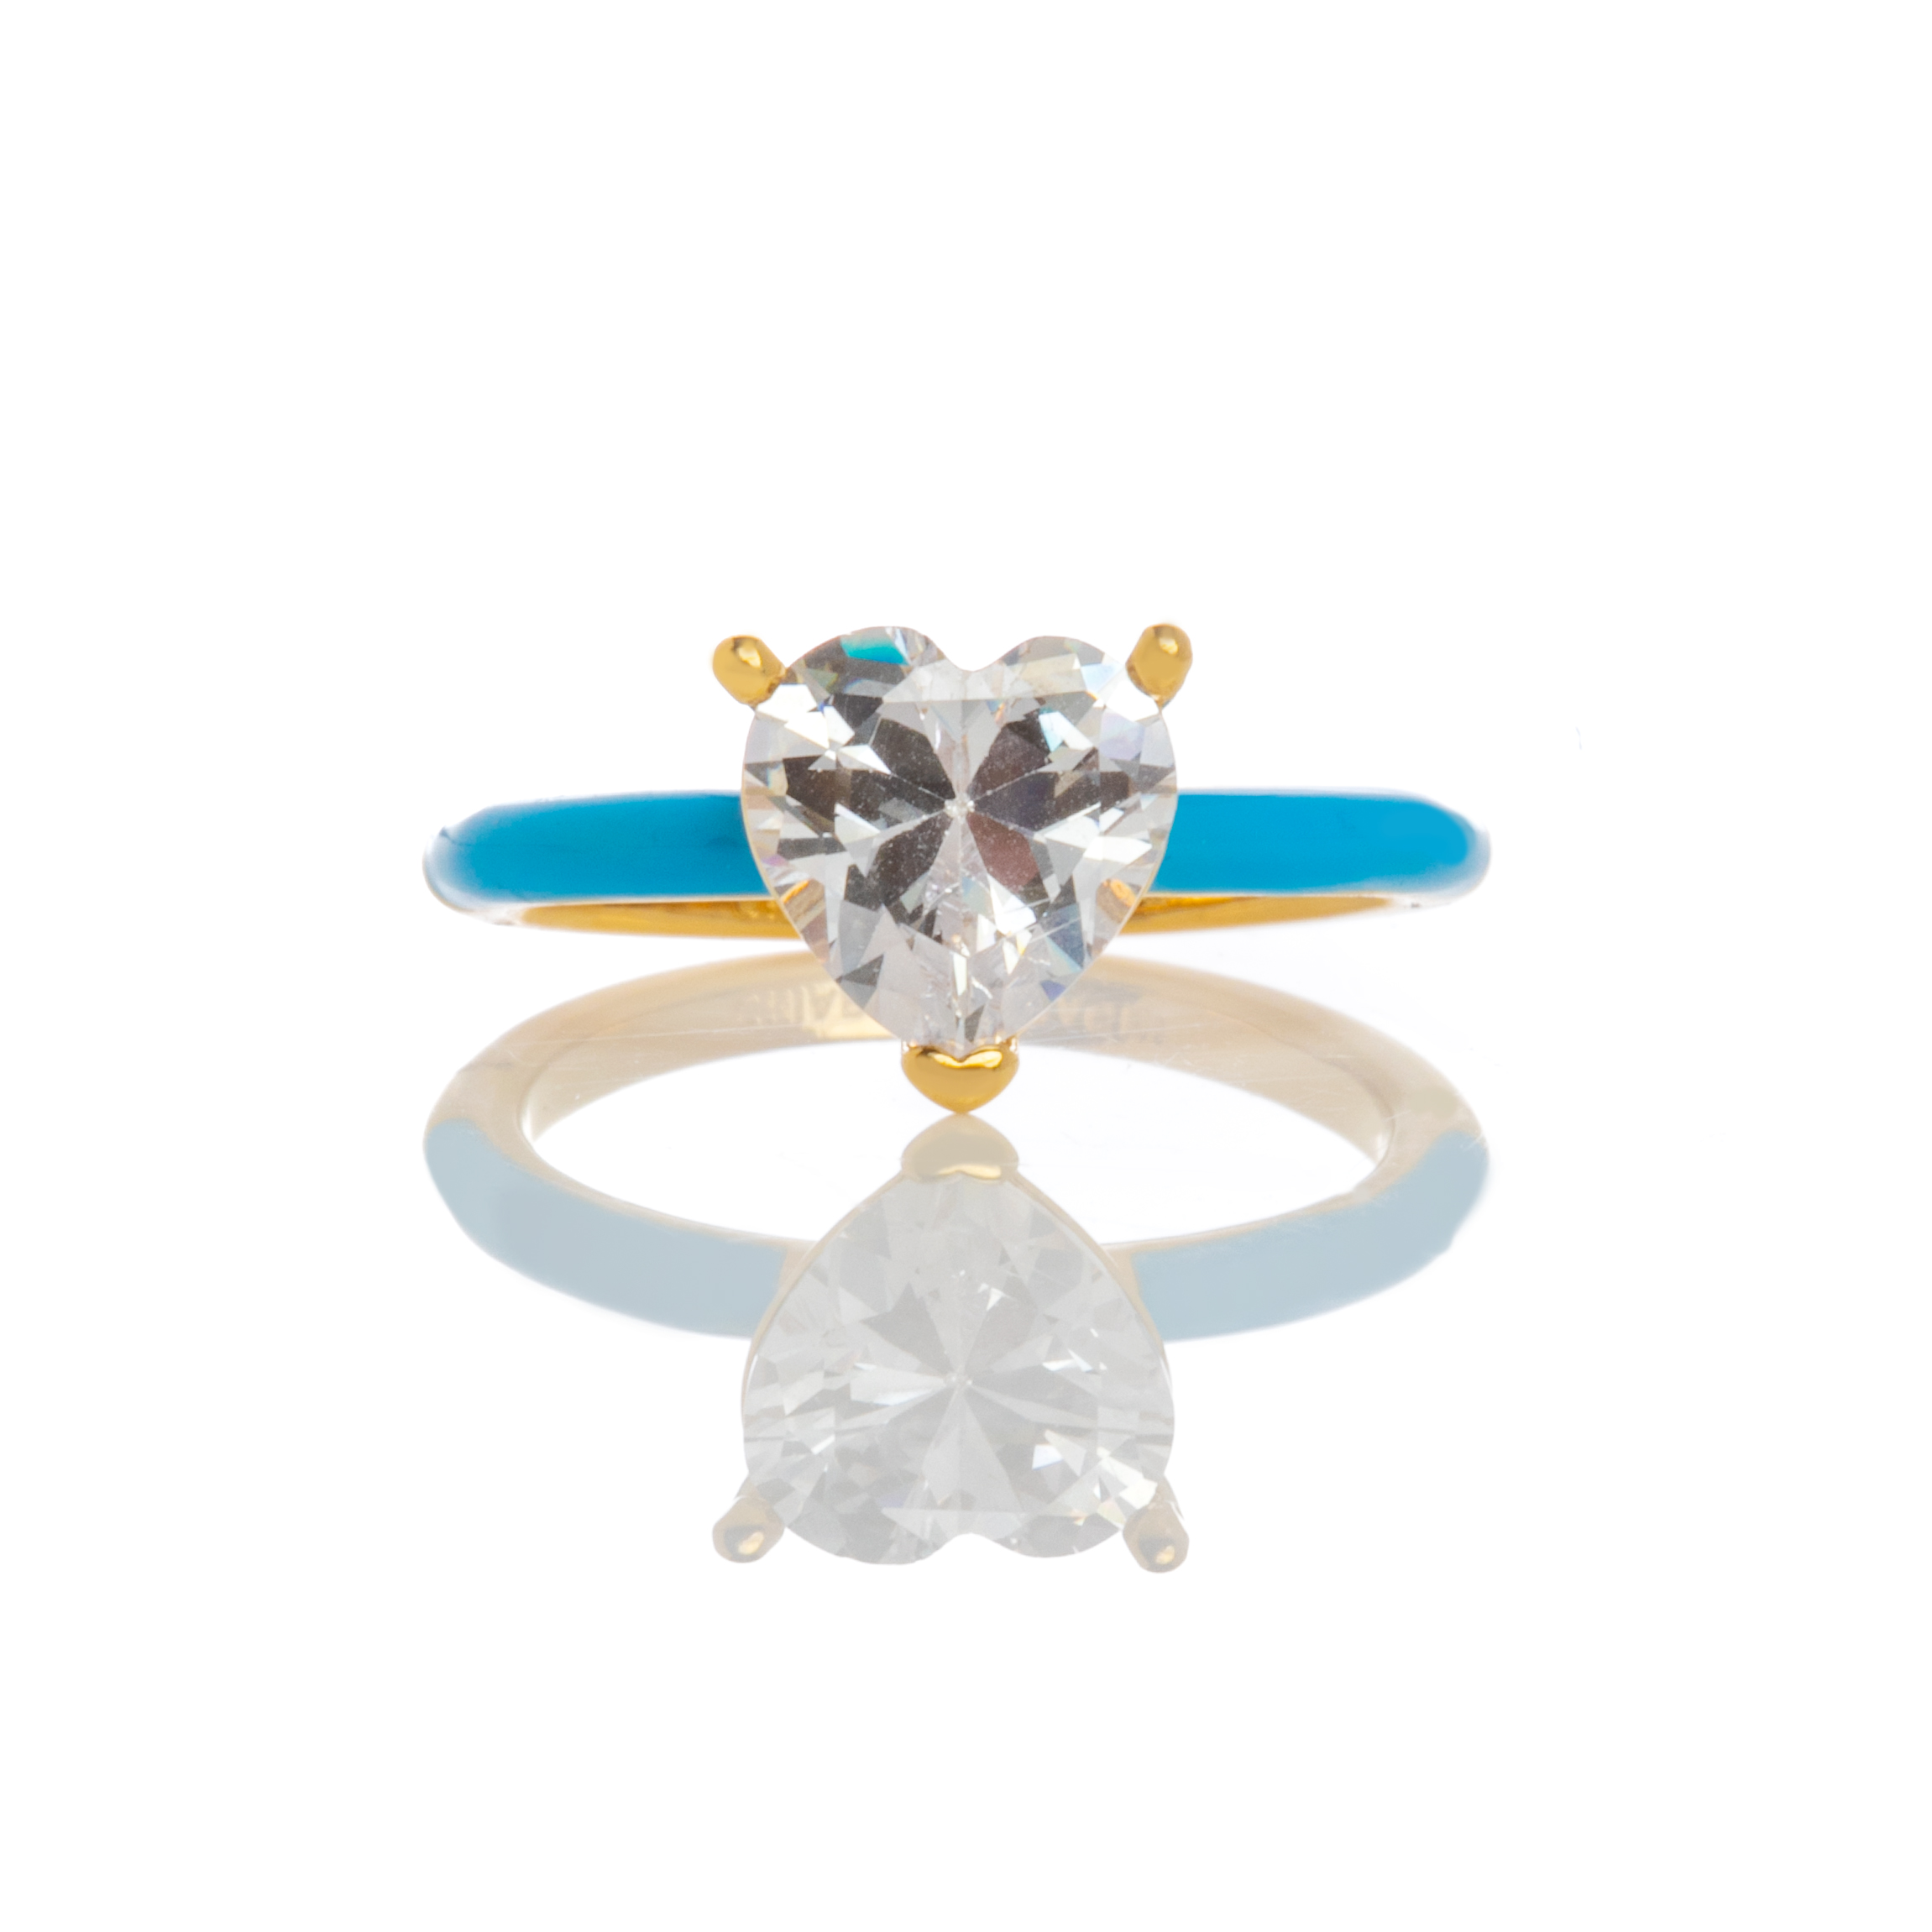 Δαχτυλίδι Chiara Ferragni με Γαλάζιο Σμάλτο και Καρδιά